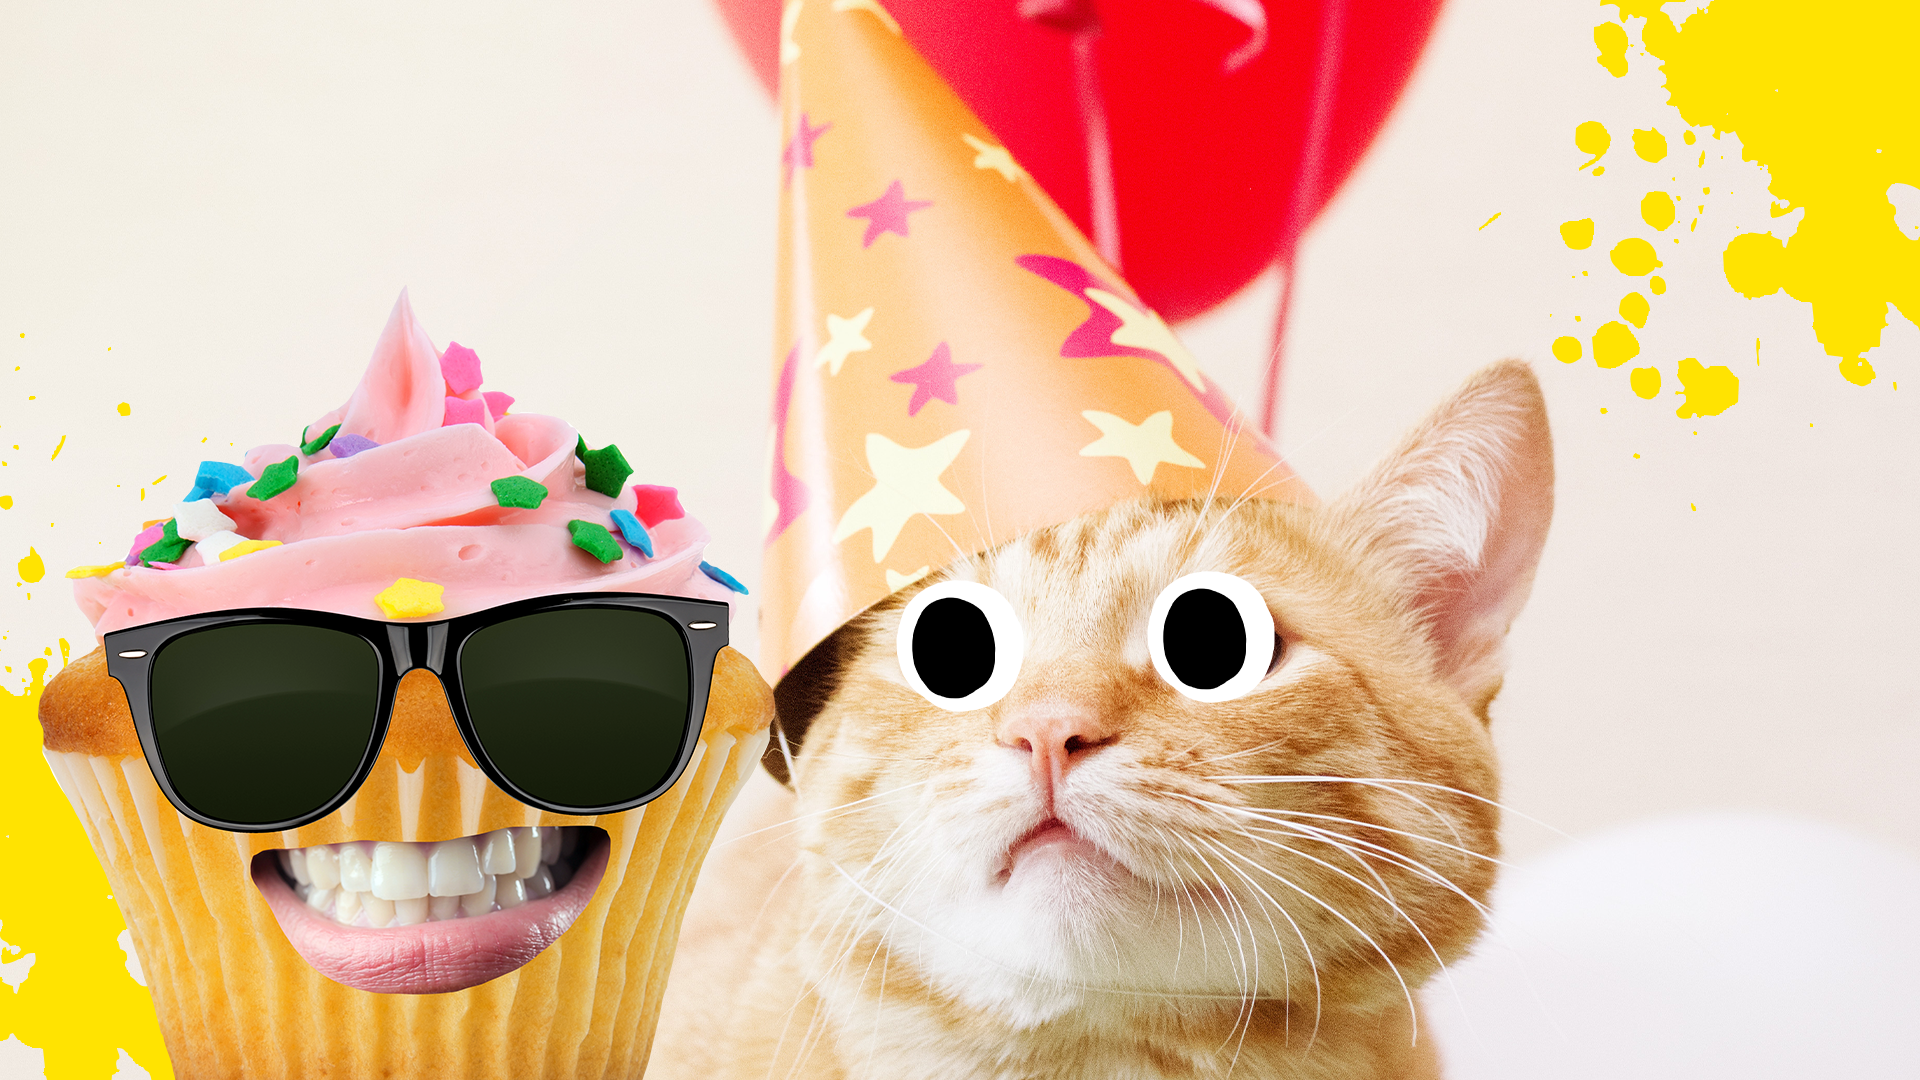 Birthday cat and Beano cupcake